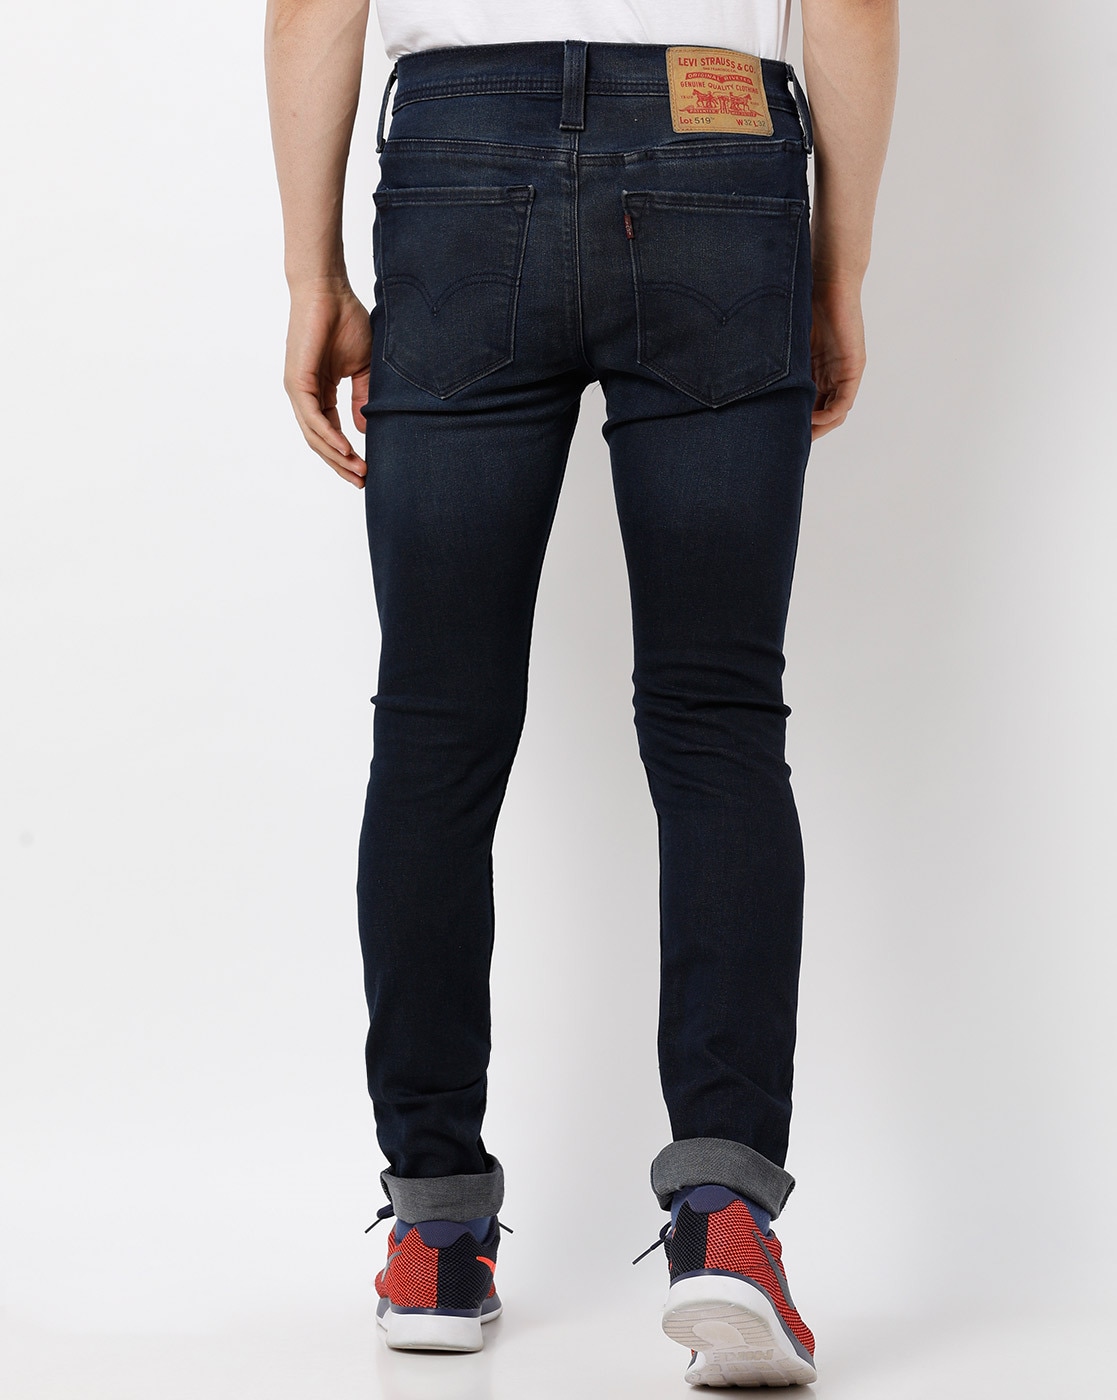 levis 519 mens jeans